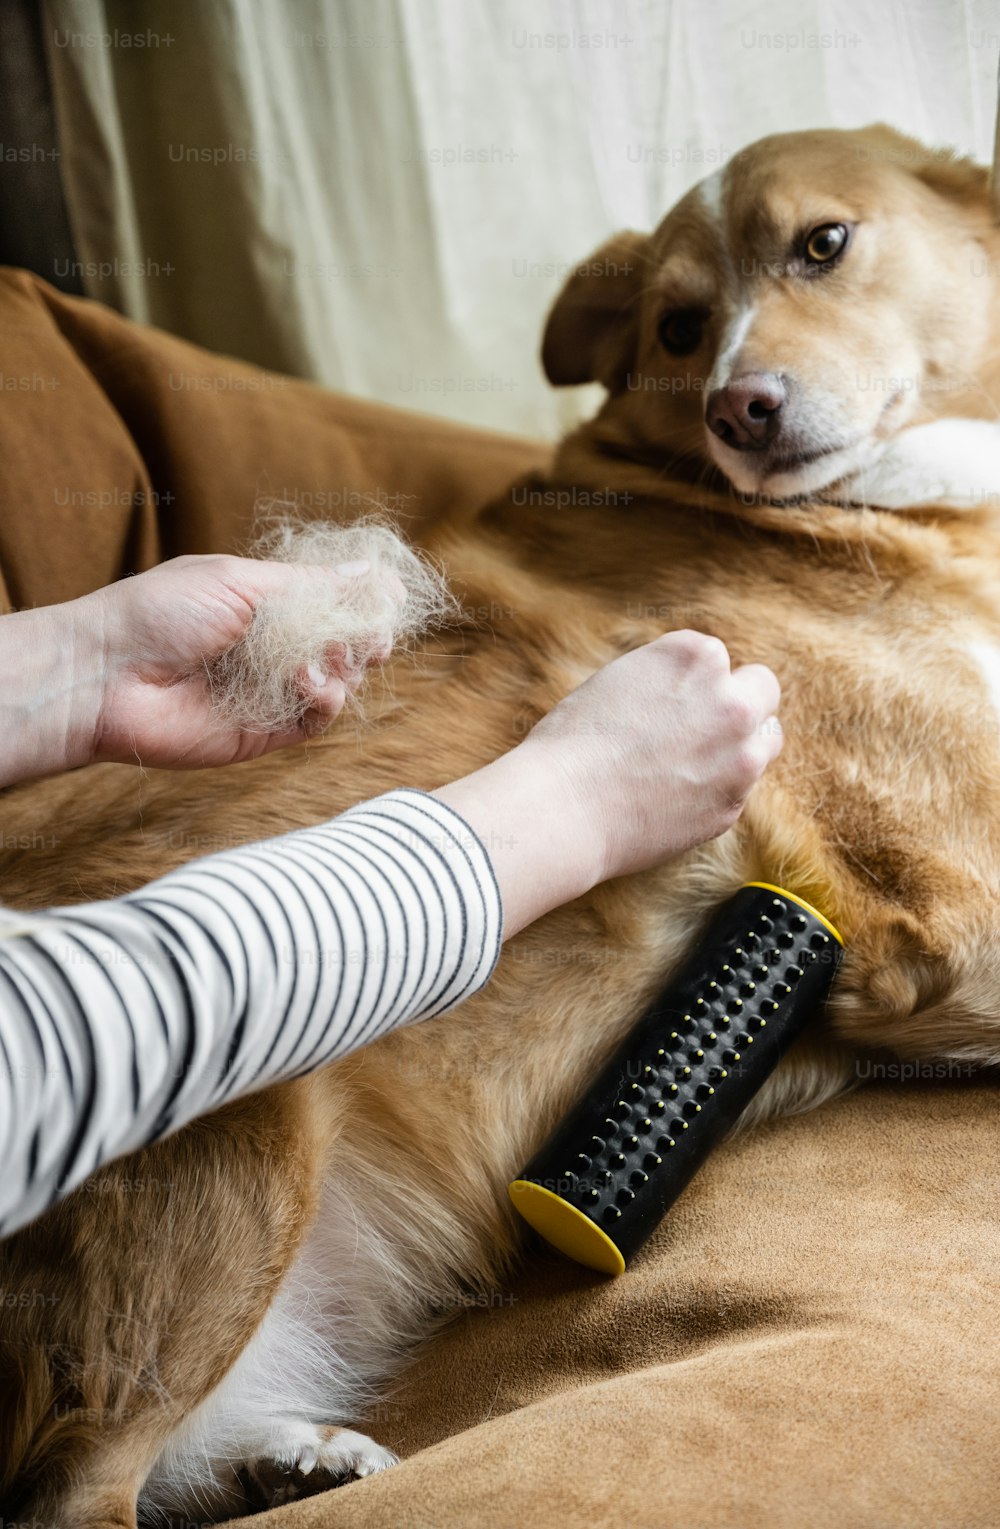 Un perro acostado en un sofá siendo preparado por una mujer